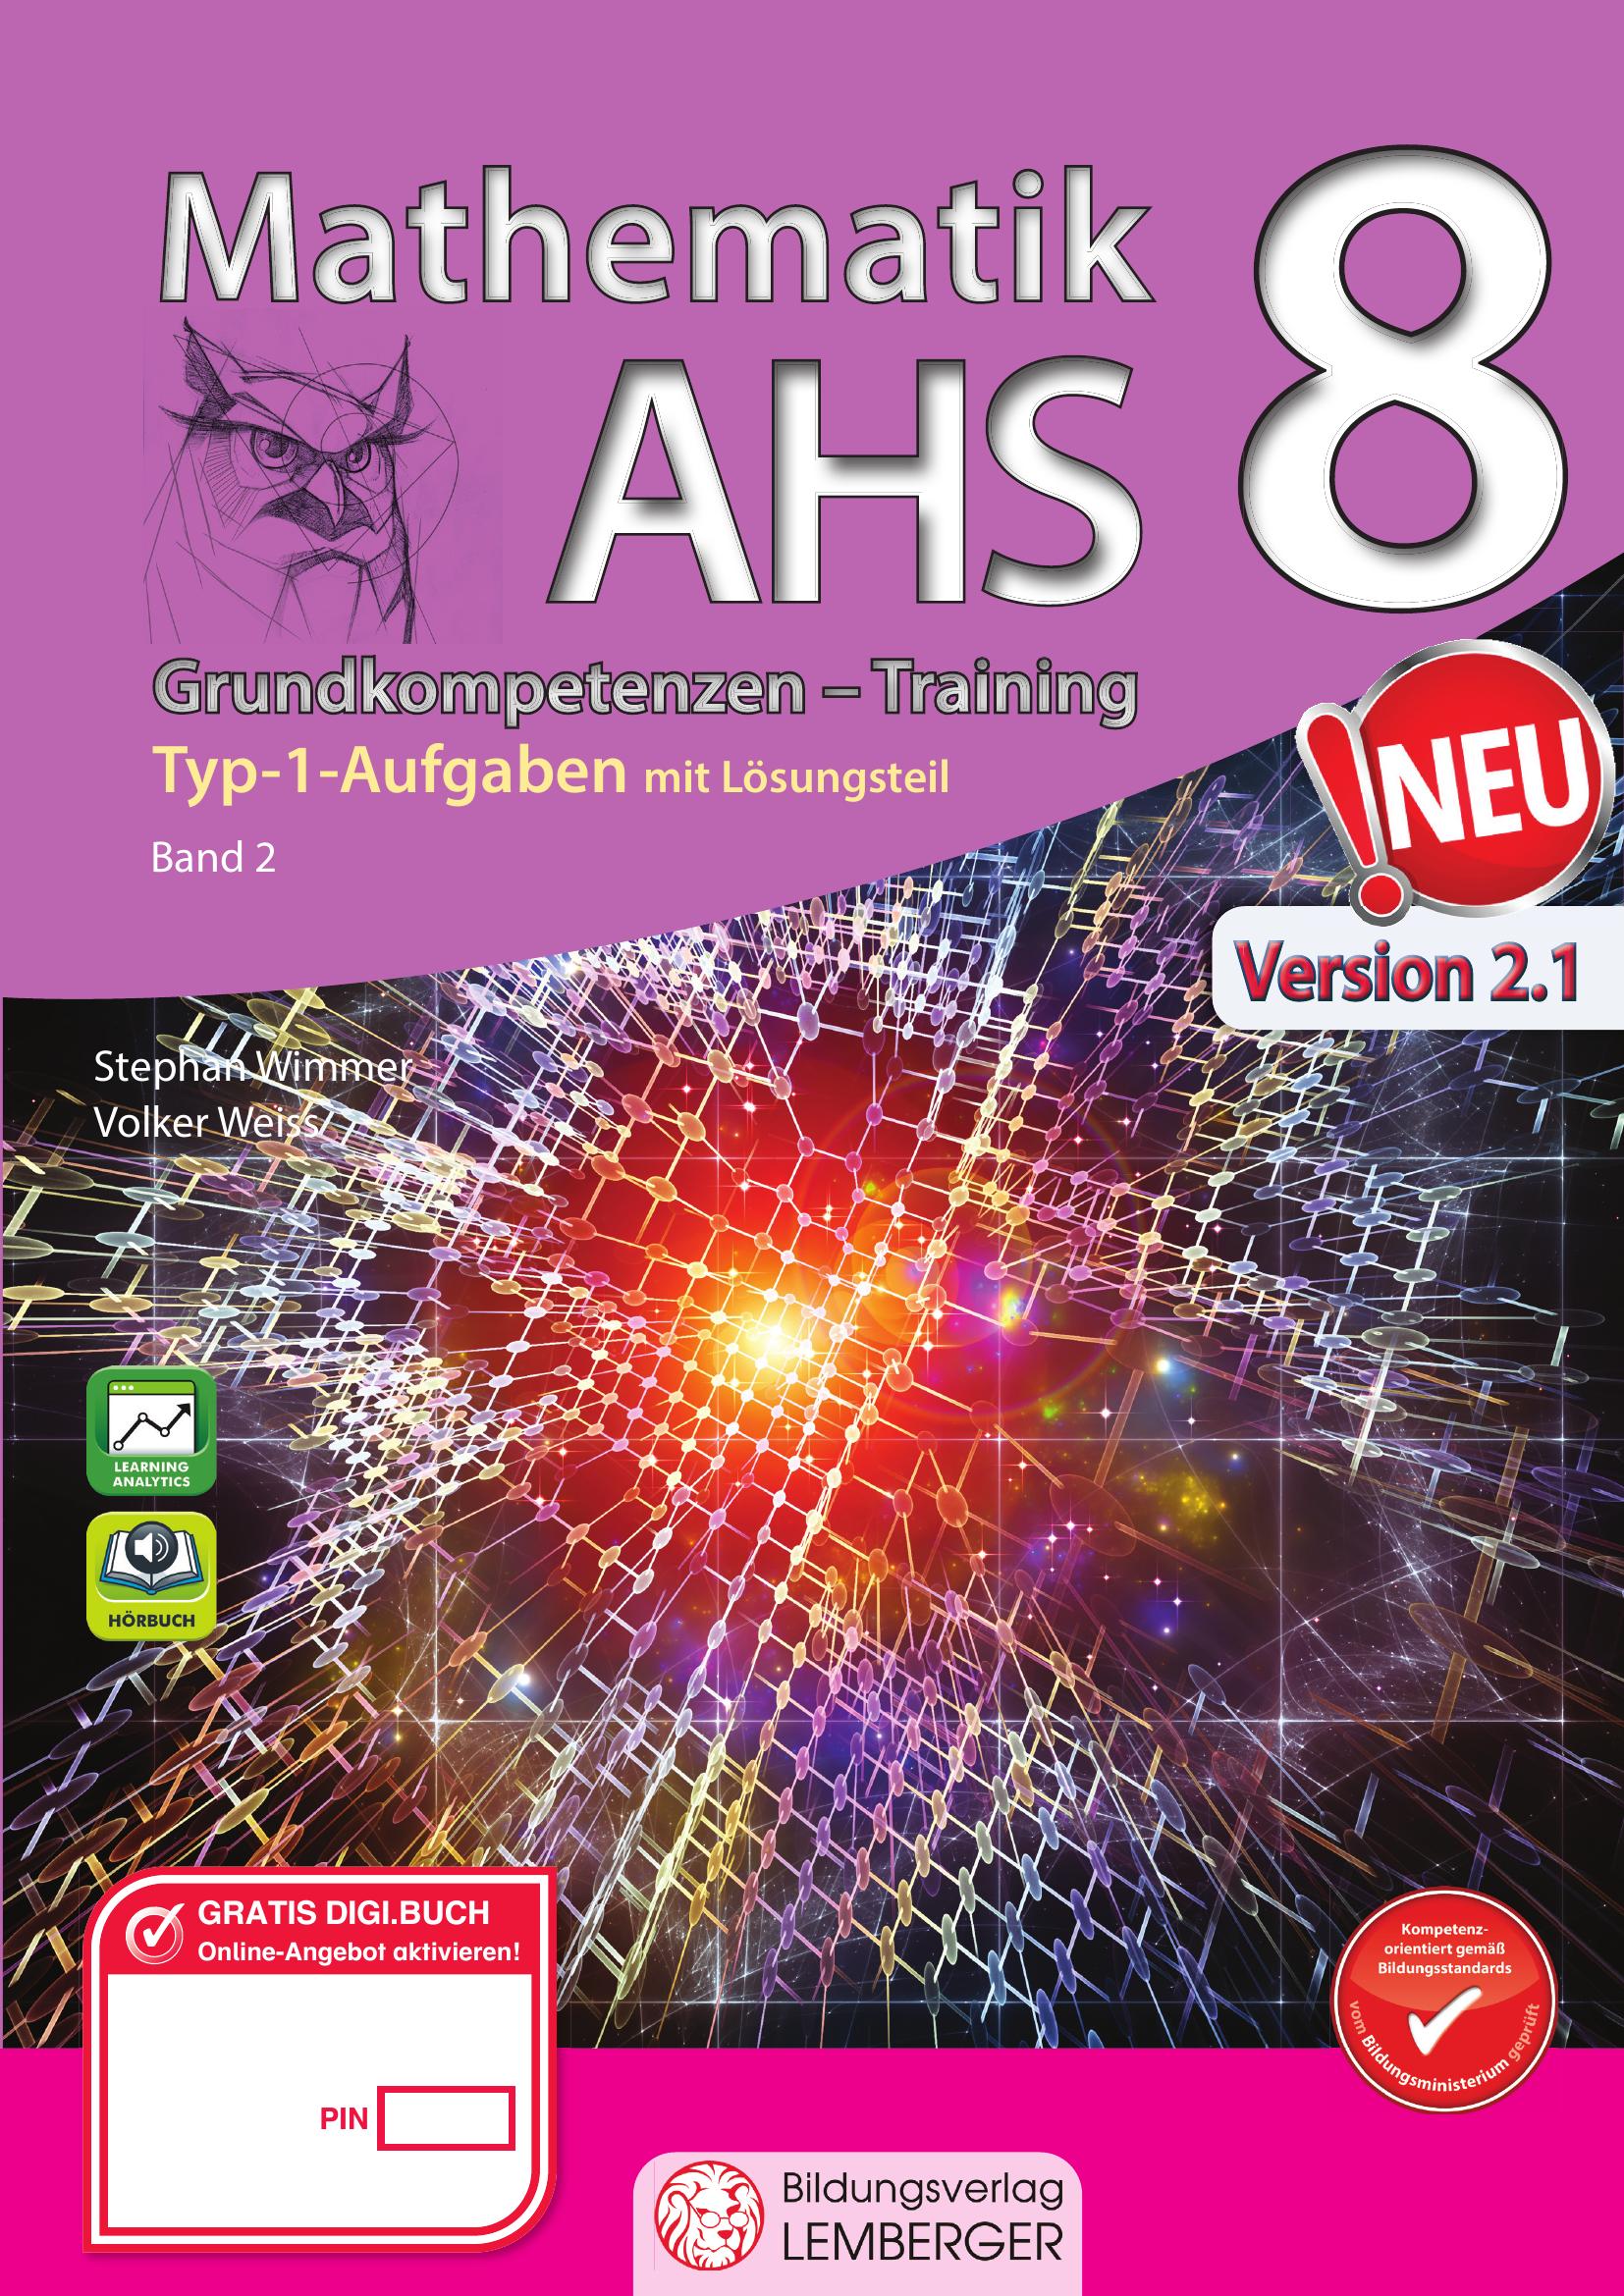 Mathematik AHS 8 – Grundkompetenzen Training Mathematik 8 v2.1 / Band 2 mit Lösungsteil